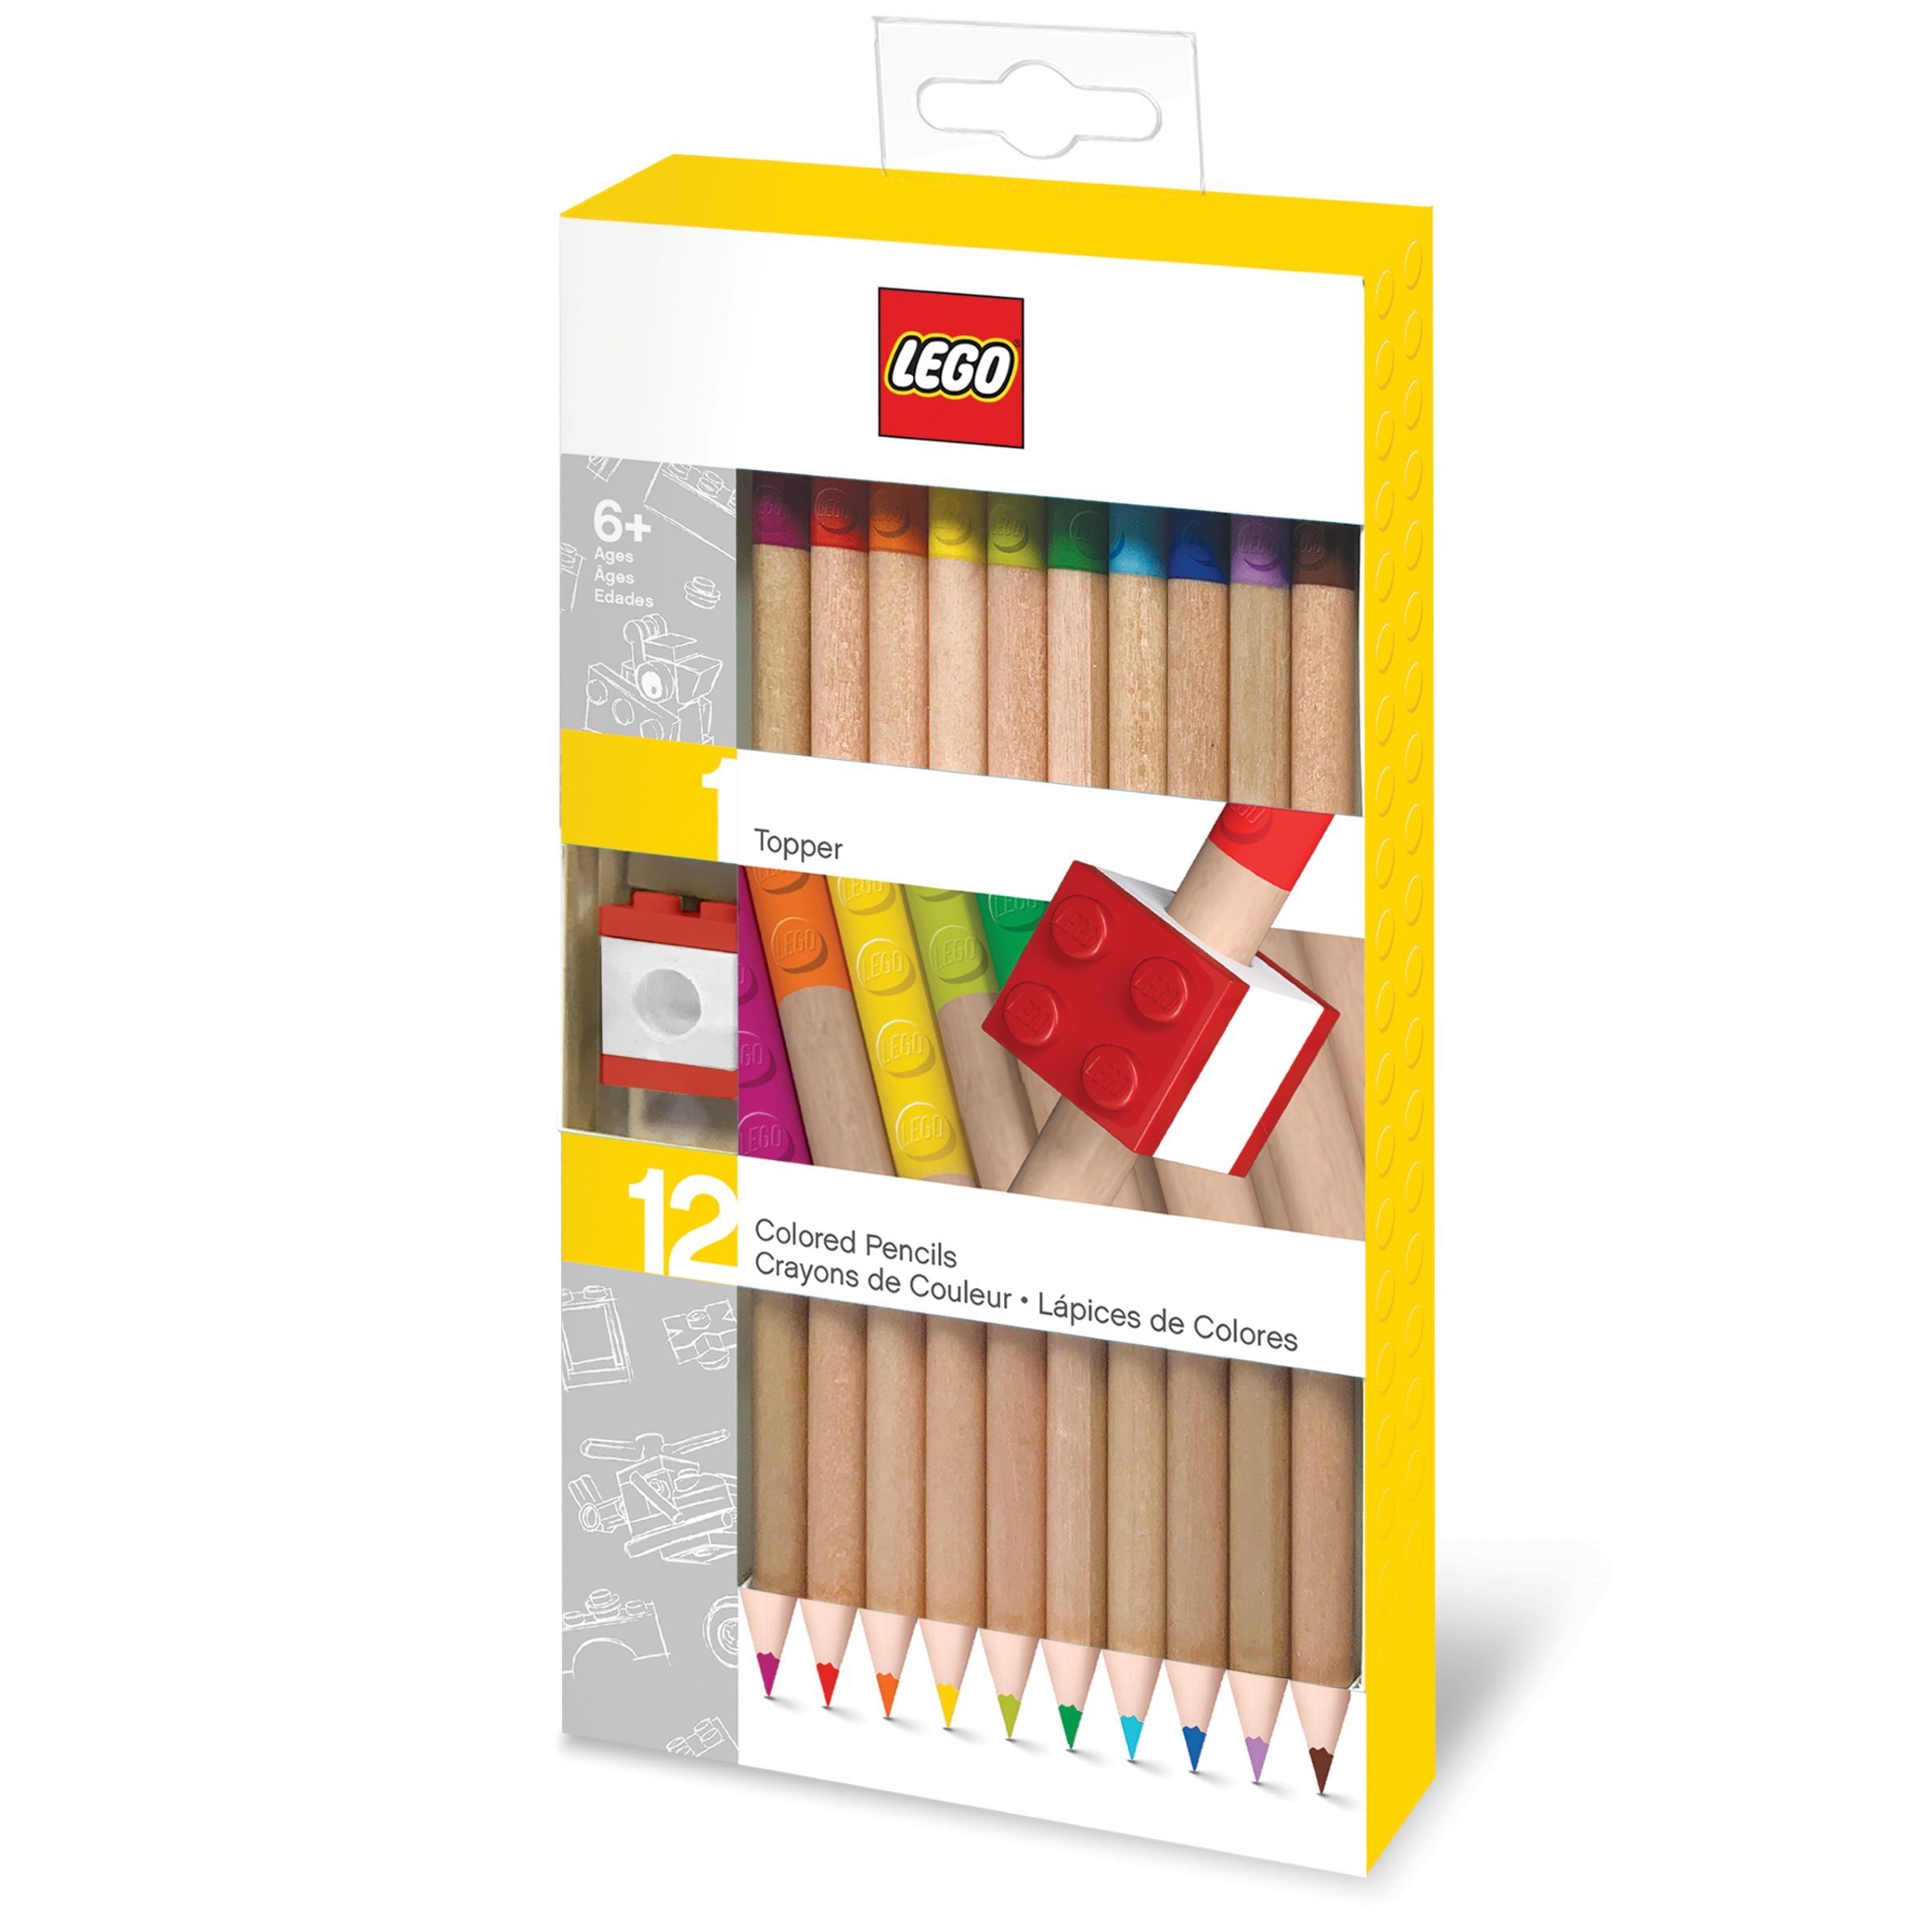 LEGO Gear 5007197 12er-Pack Buntstifte 2.0 mit Aufsatz LEGO_5007197_alt1.jpg